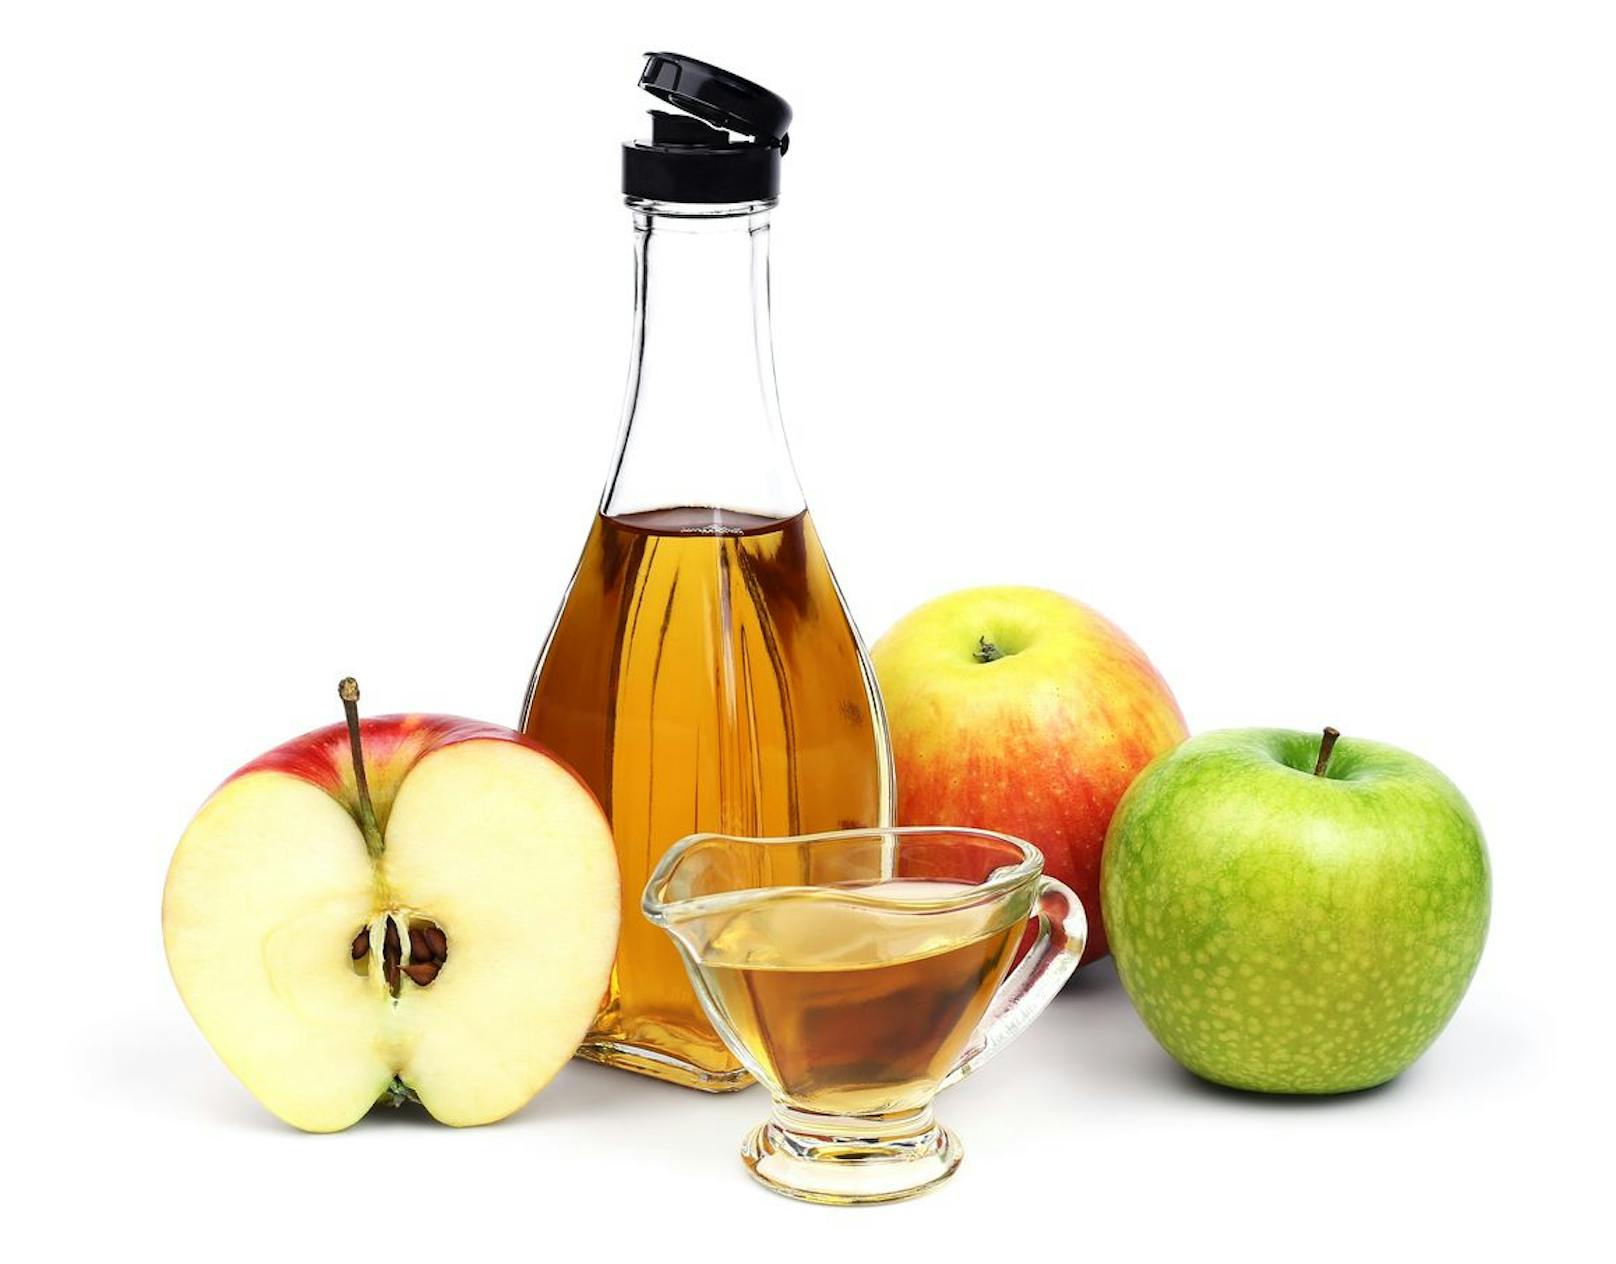 Apfelkerne kannst du ruhig schlucken. Wer die Fruchtkerne jedoch sammelt kann daraus Apfelpektin herstellen oder die Kerne als hausgemachten Apfelessig verwerten. 